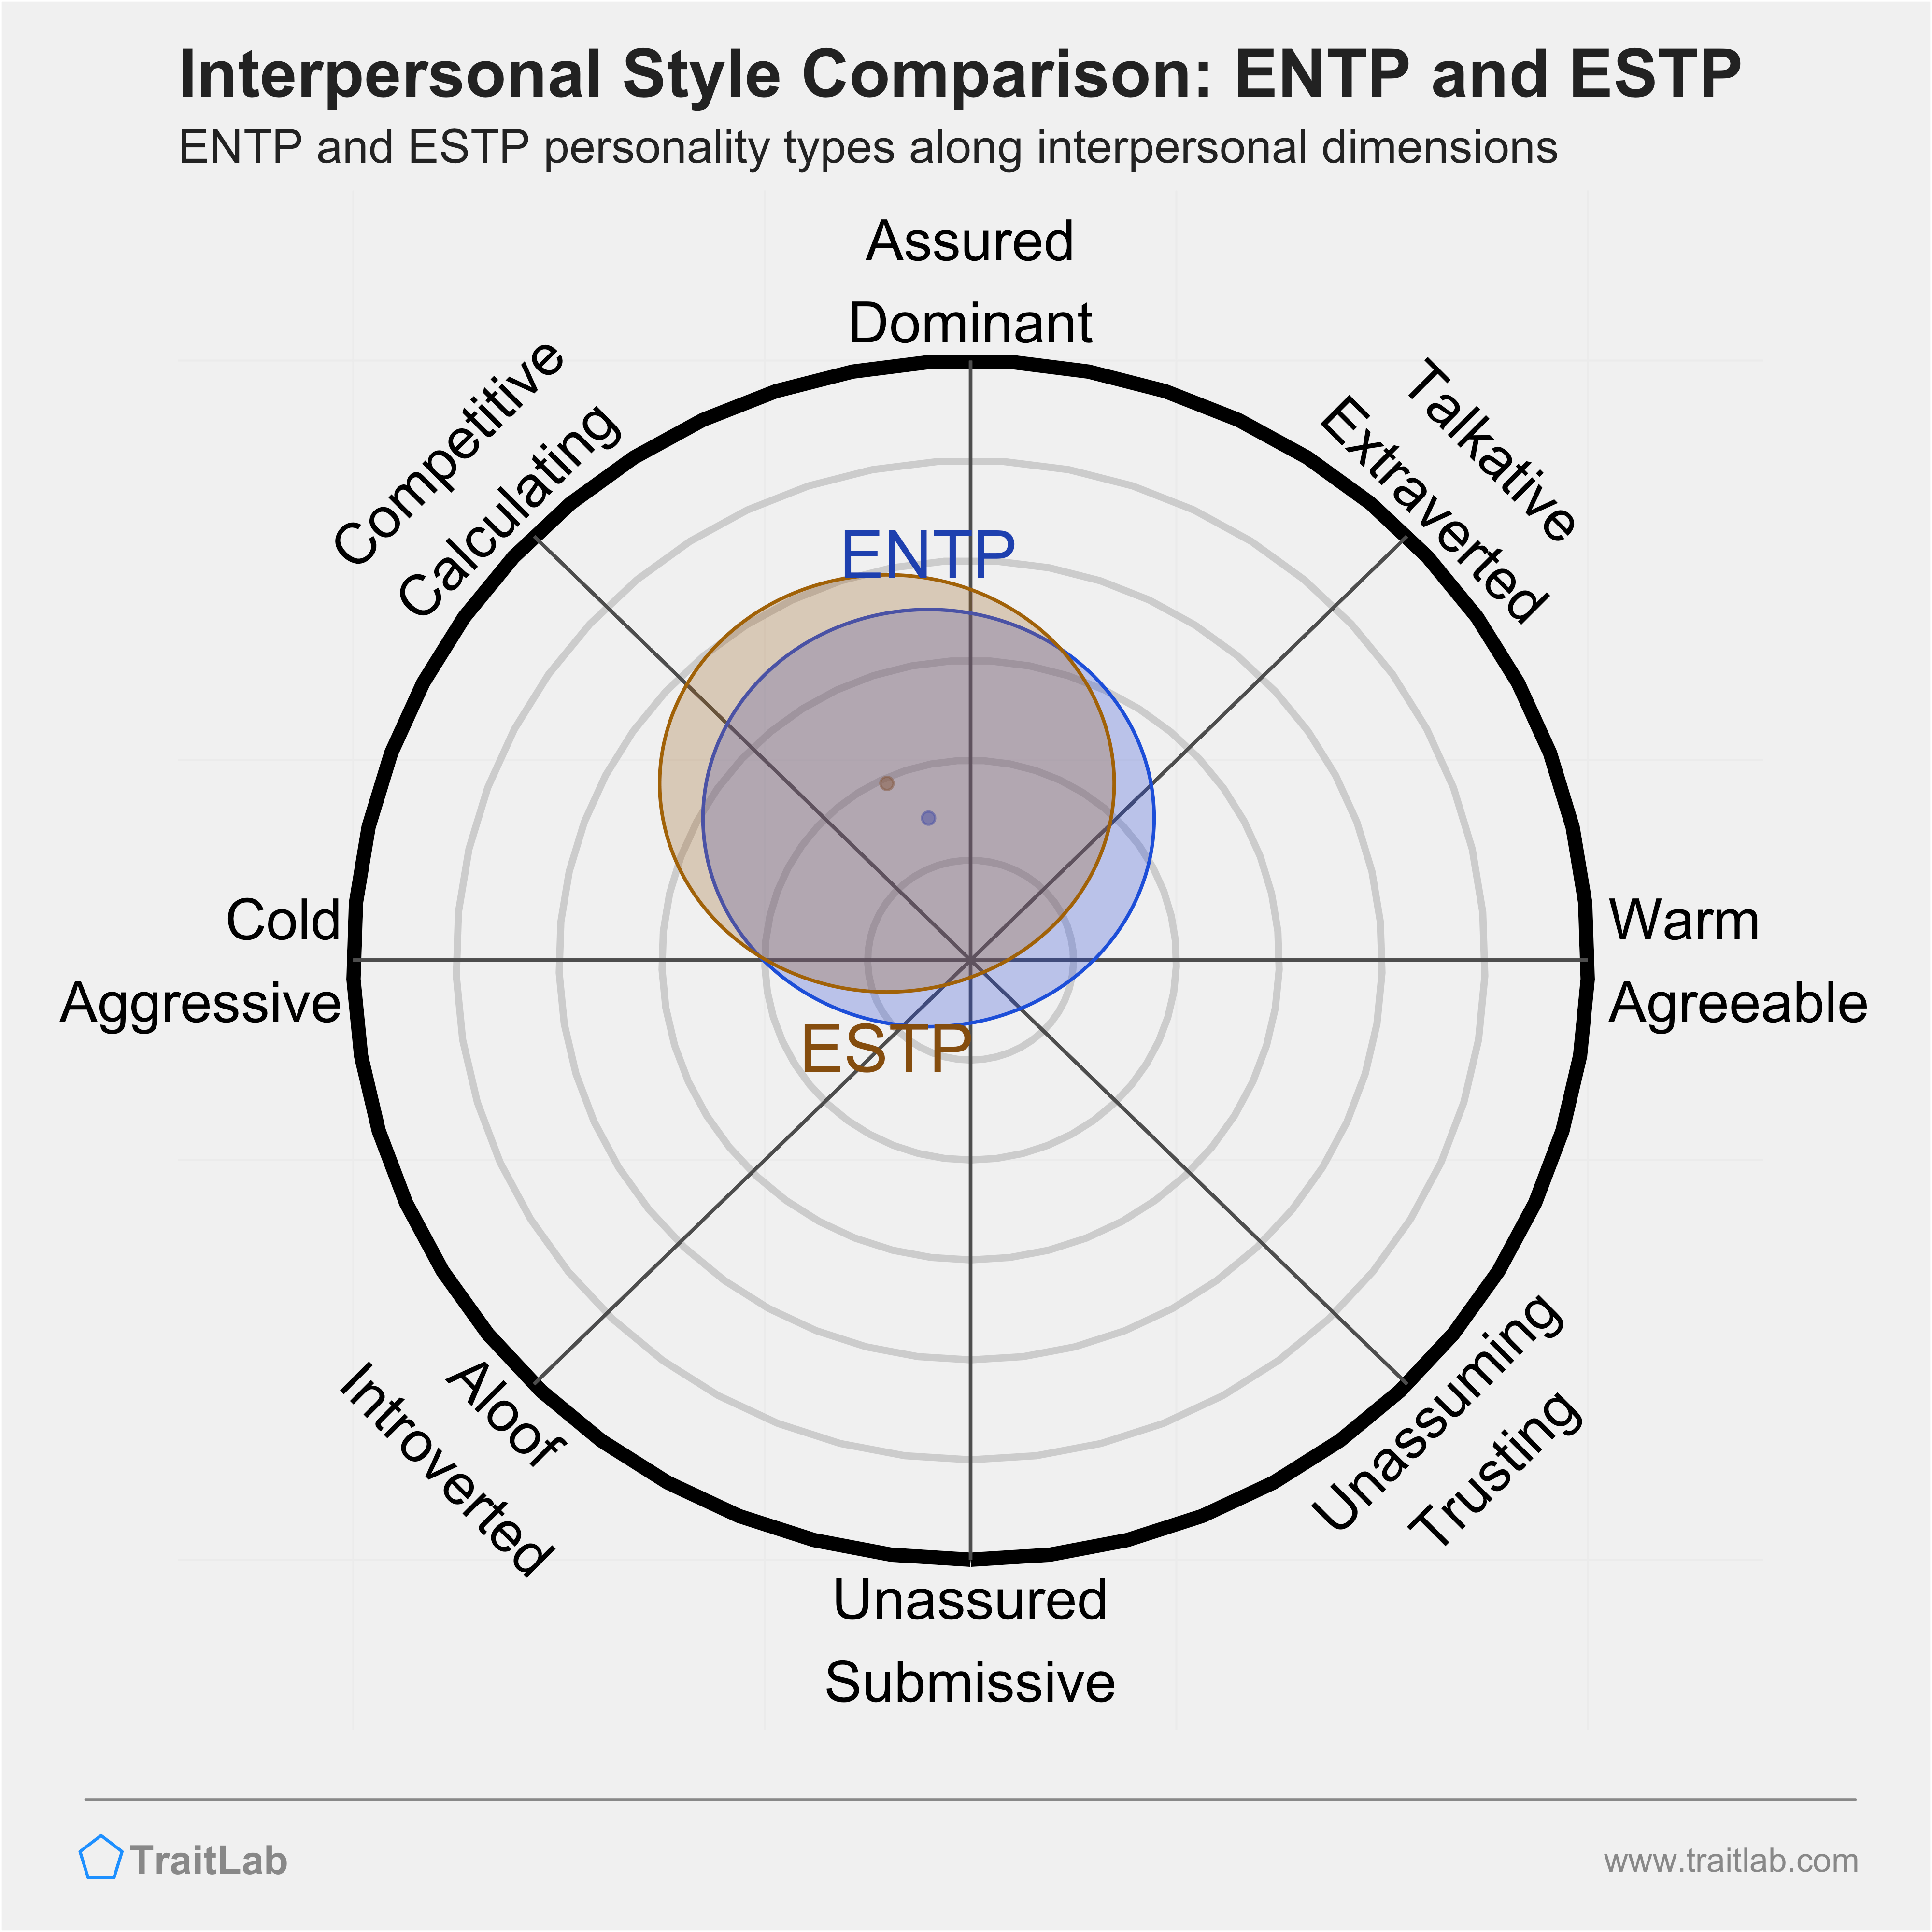 ENTP and ESTP comparison across interpersonal dimensions